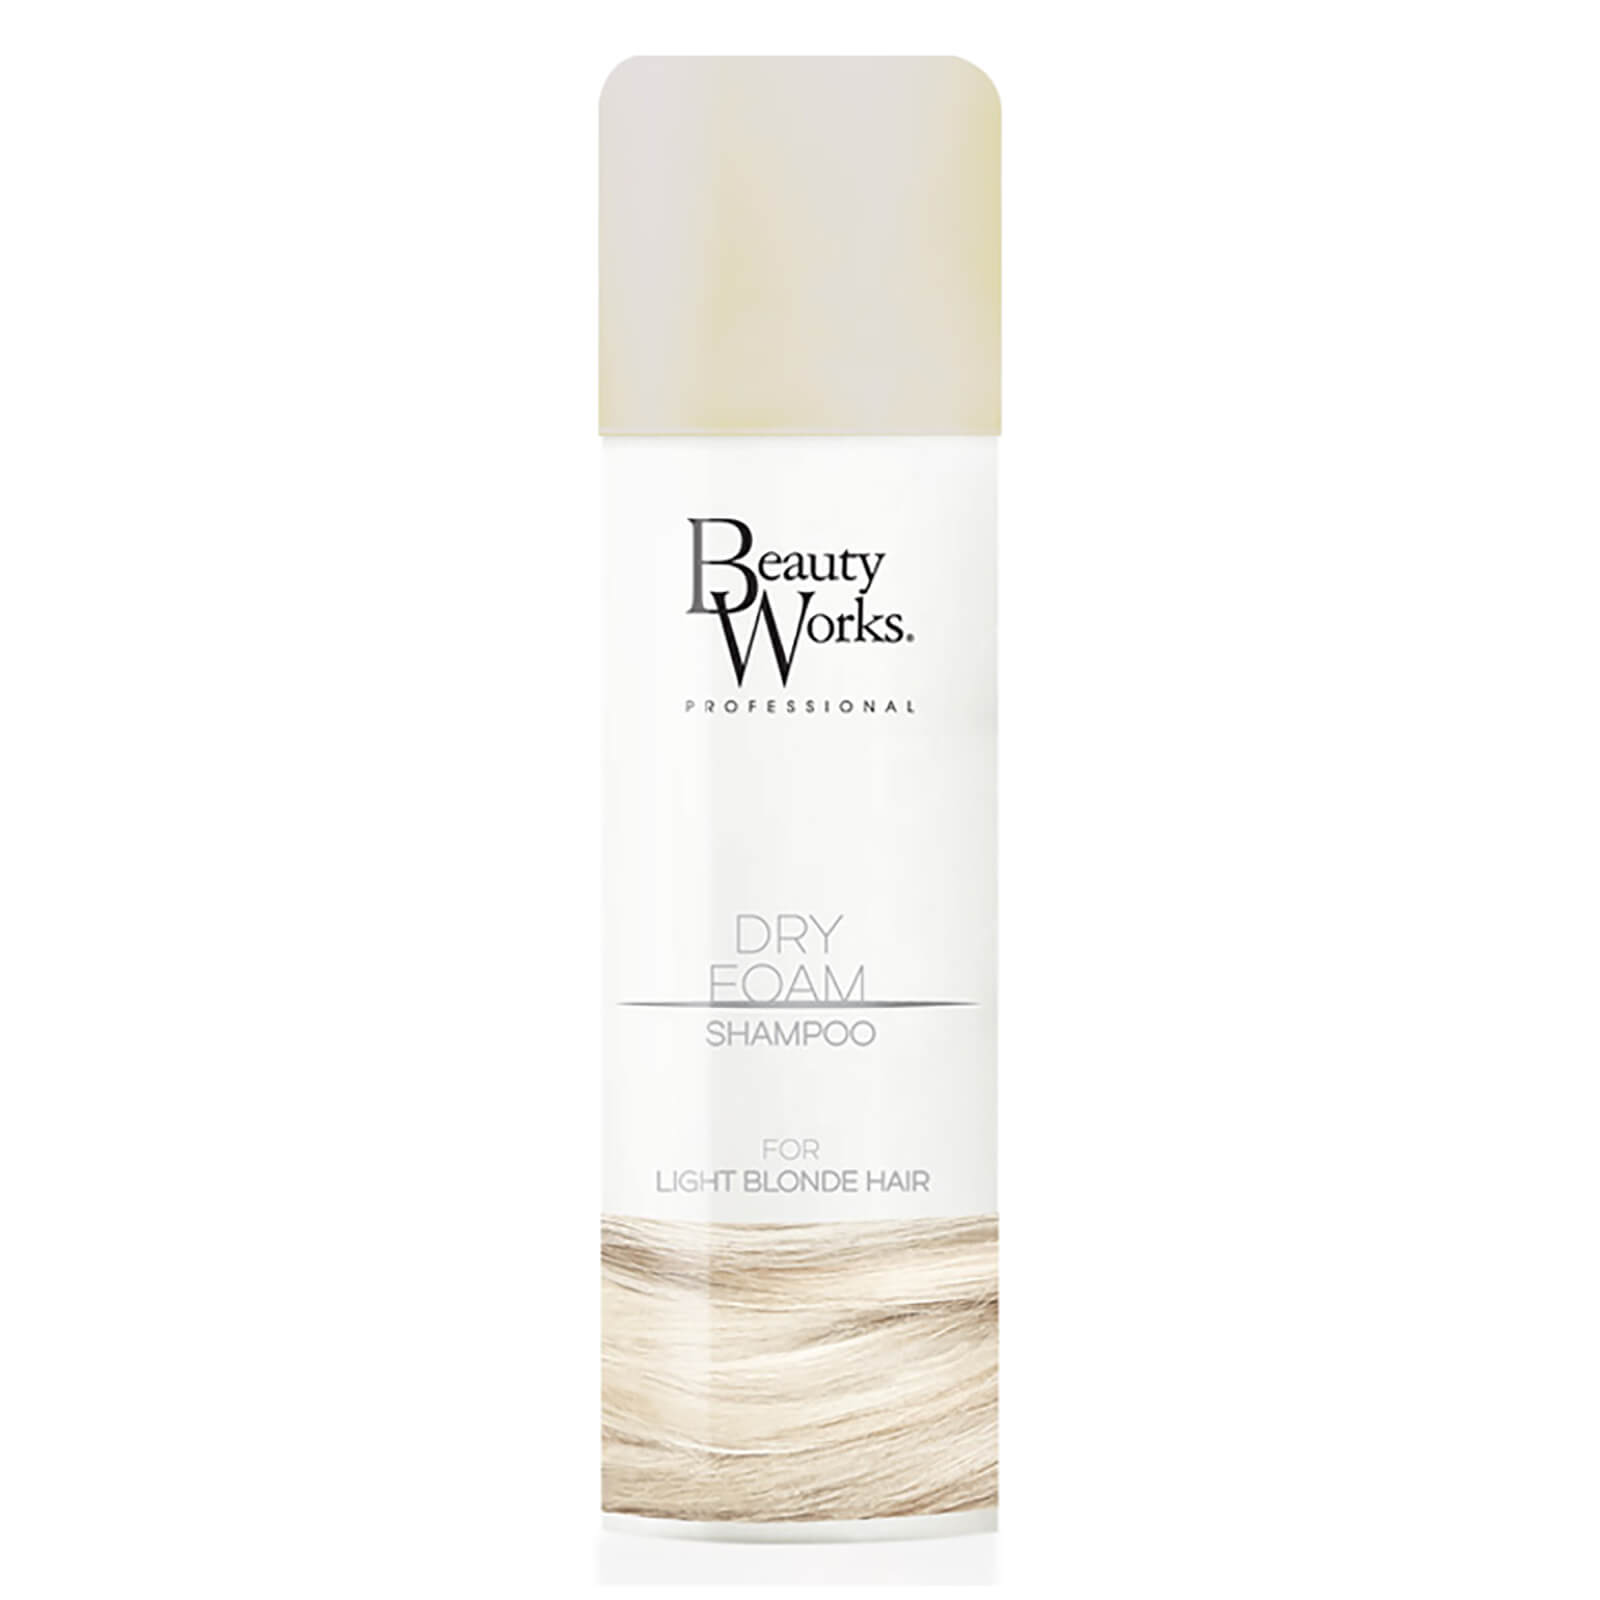 Beauty Works Dry Foam Shampoo 150ml - Light Blonde